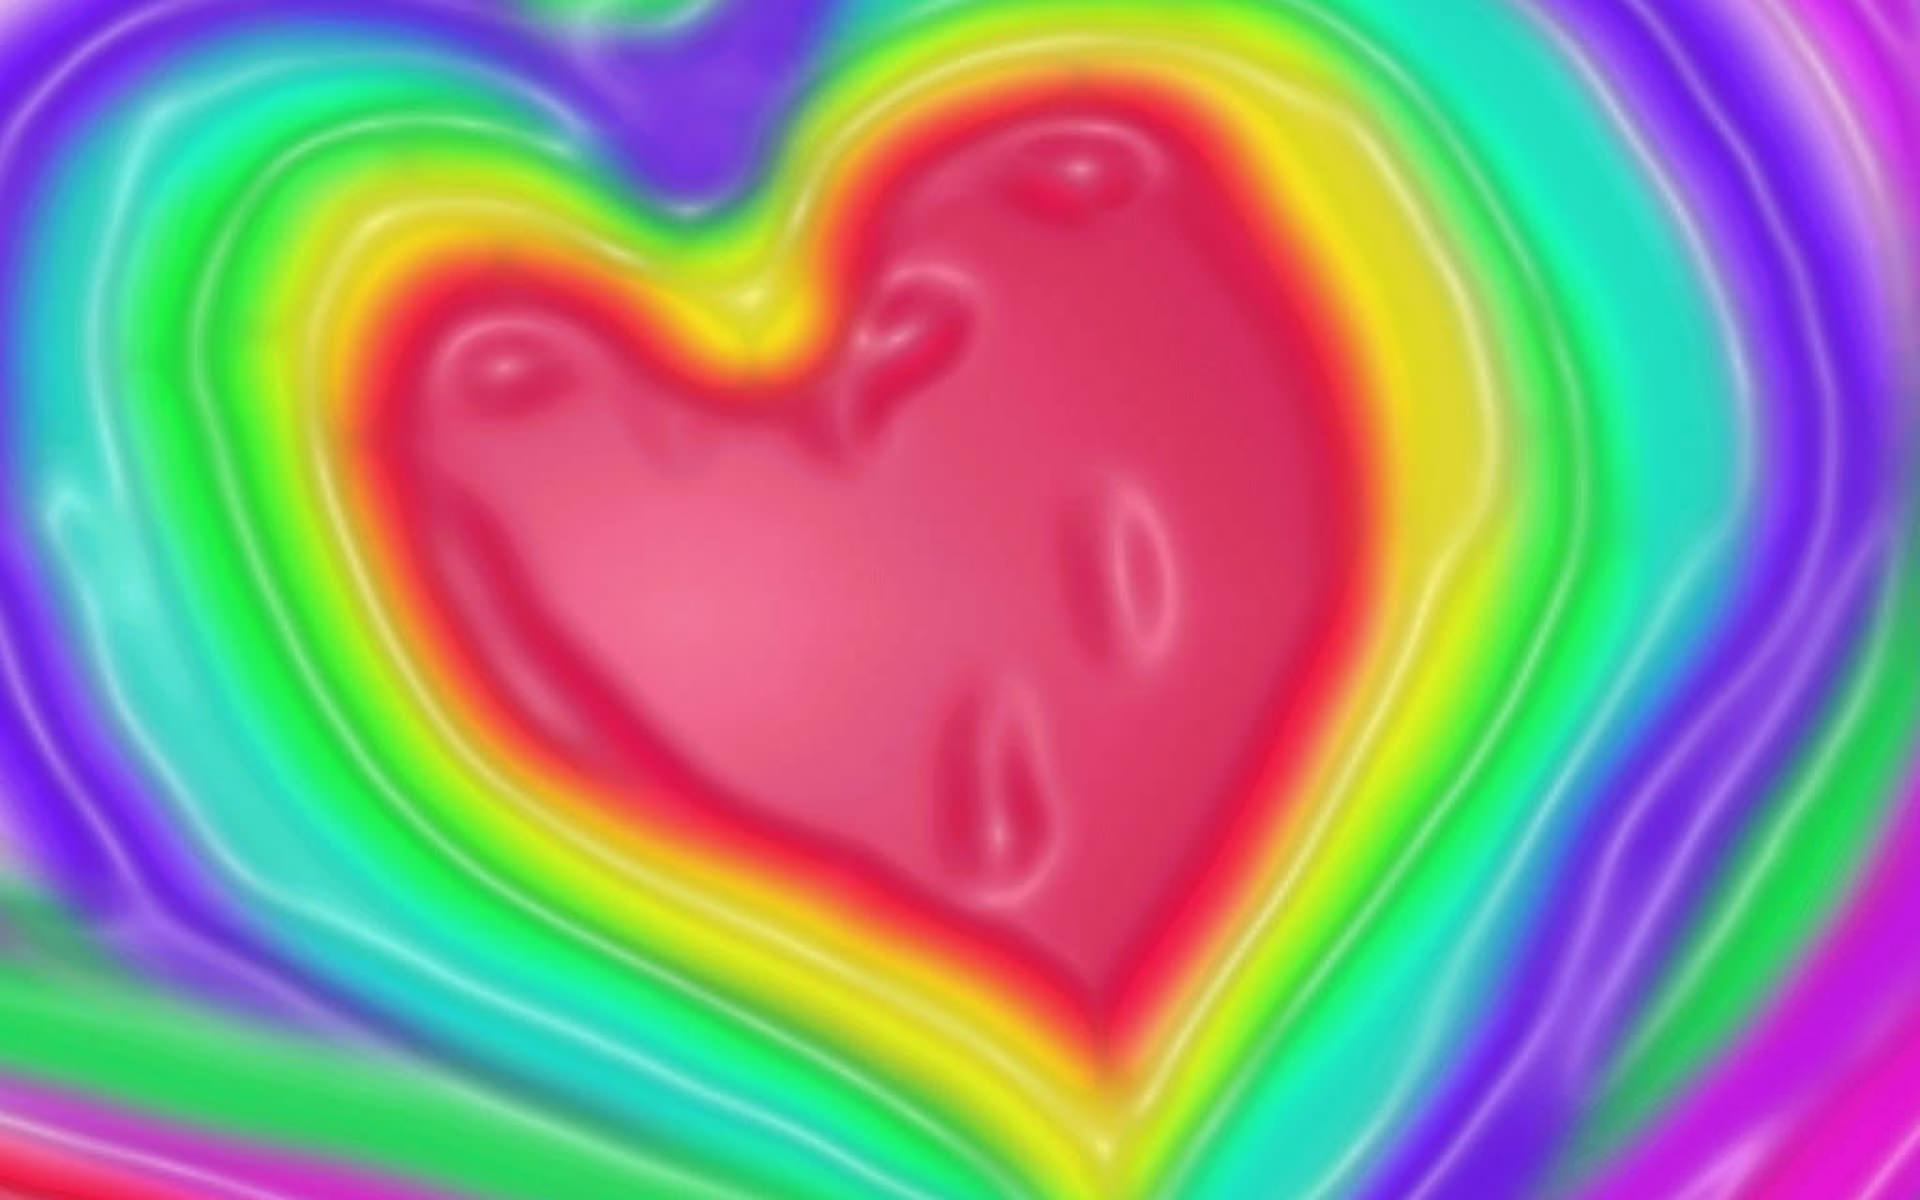 Rainbow Love Heart Wallpaper HD 2108 Wallpaper. High